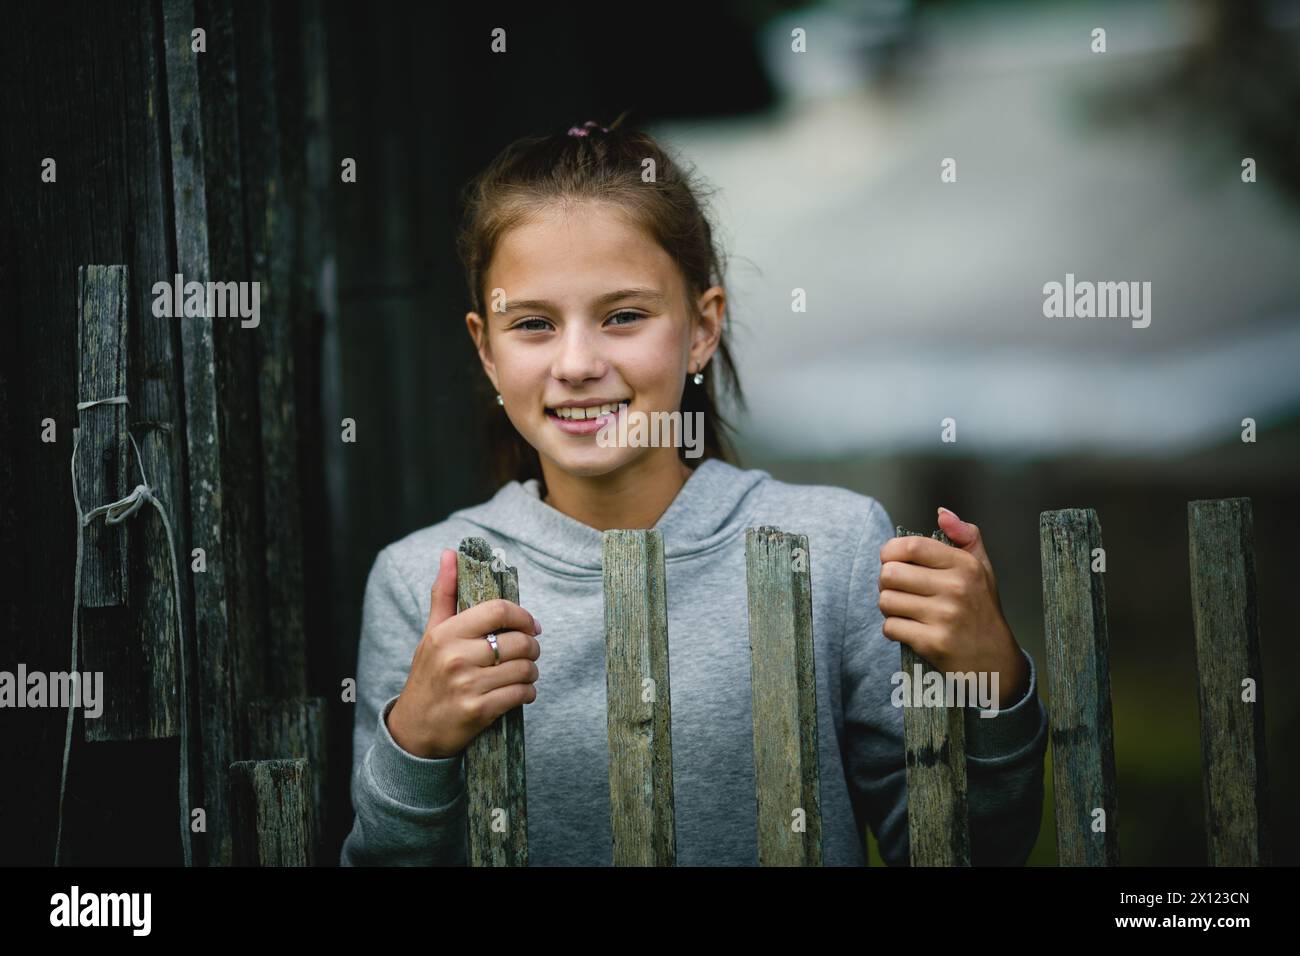 Ein Teenager steht hinter einem hölzernen Zaun, ihr Blick nach vorne gerichtet, sie sieht besinnlich und träumerisch aus. Stockfoto